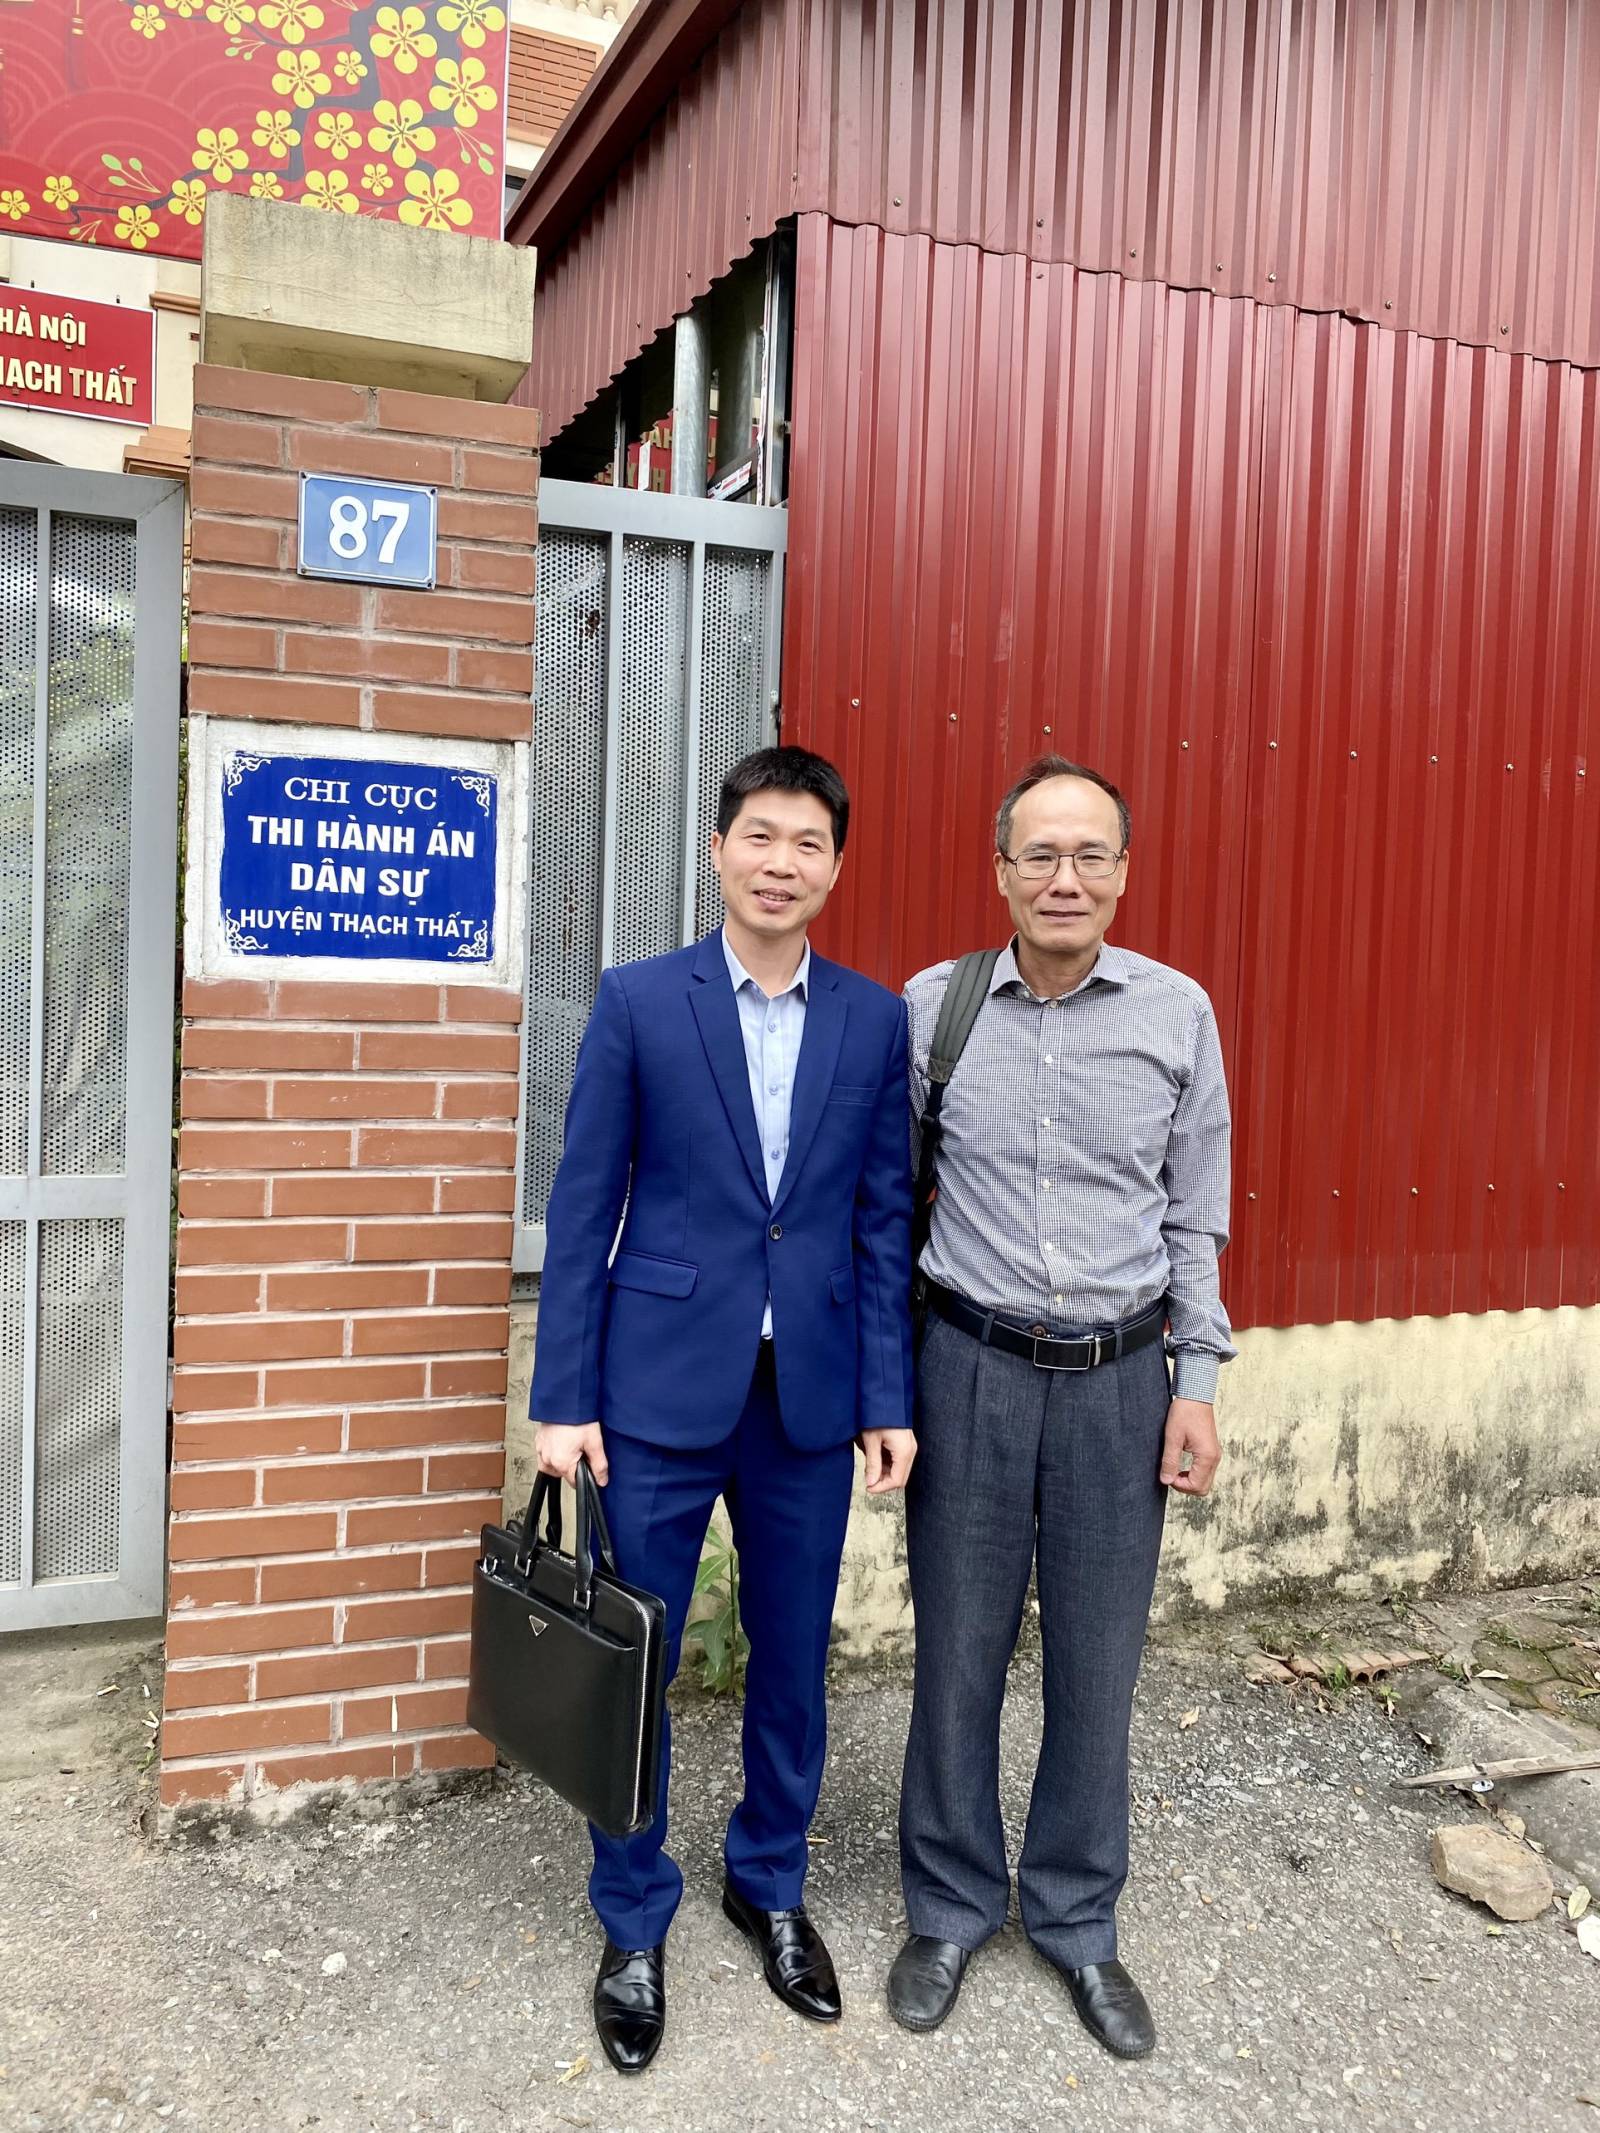 Bảo vệ quyền và lợi ích hợp pháp cho thân chủ tại cơ quan Thi hành án huyện Thạch Thất, TP Hà Nội